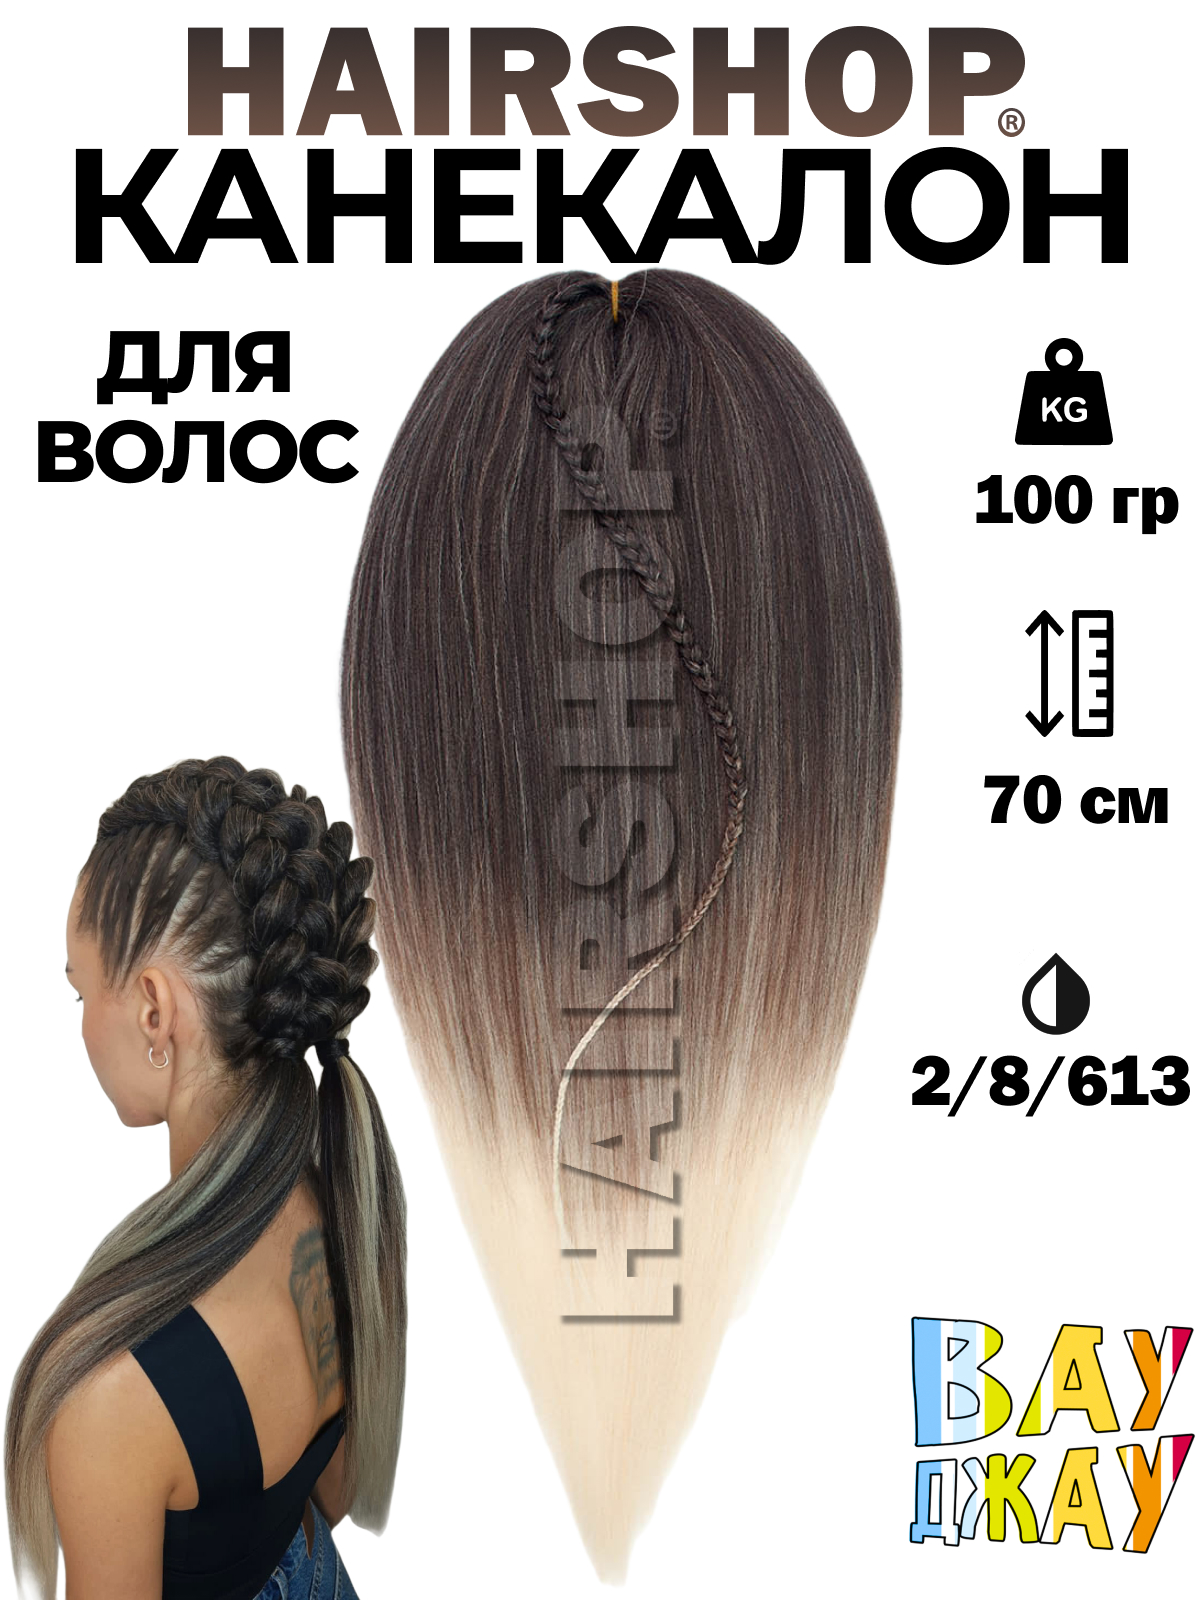 Канекалон Hairshop Вау Джау Темно коричневый Шоколад Блонд 1,3м 100 г манекен для причесок курс по обучению плетению кос 10 уроков линком мп 1